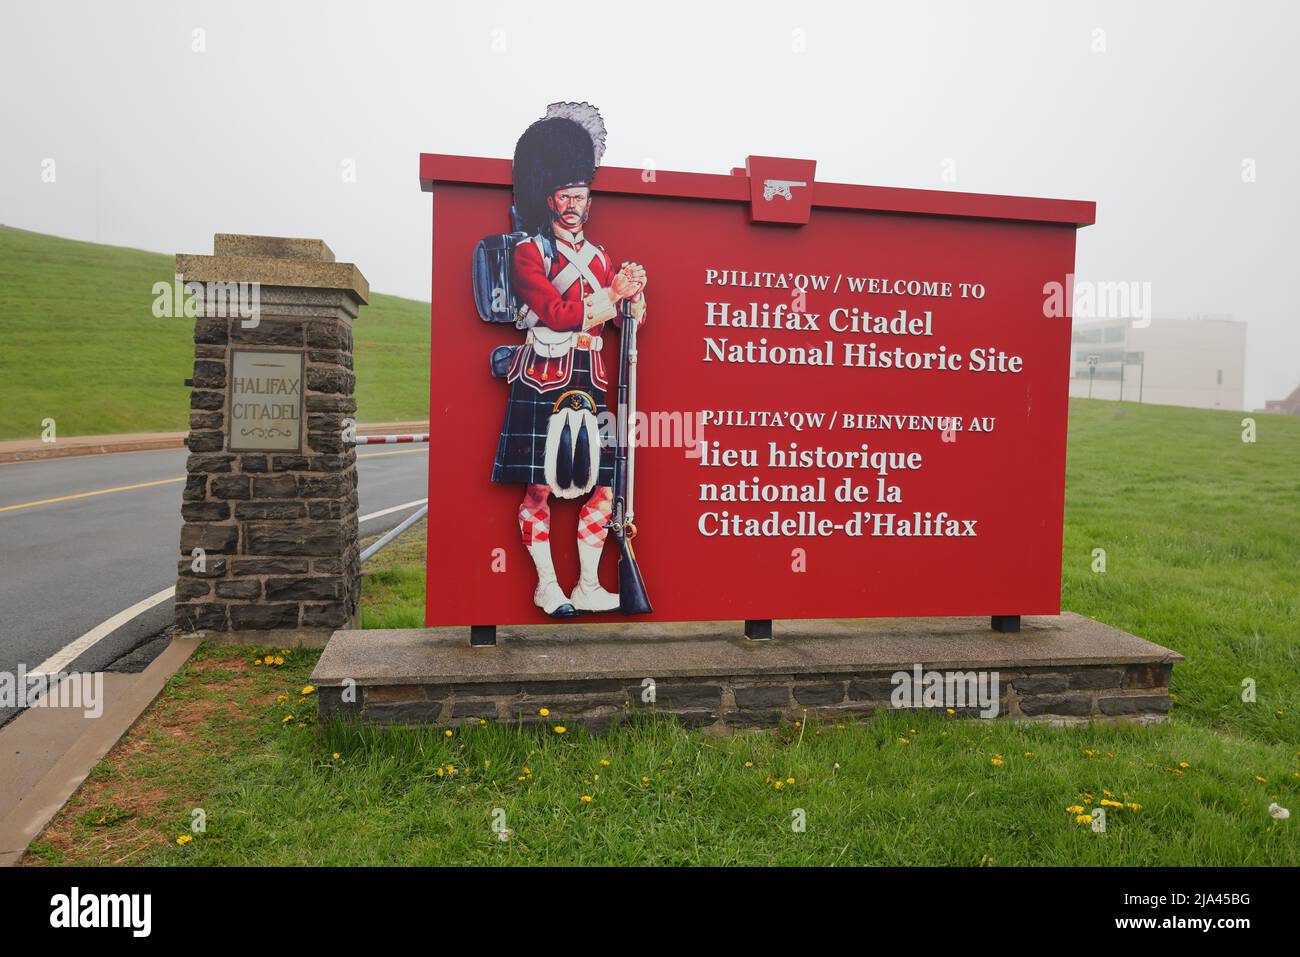 Willkommenstafel an der Halifax Citadel National Historic Site am Eingang in Englisch und Französisch. HALIFAX, KANADA - MAI 2022 Stockfoto